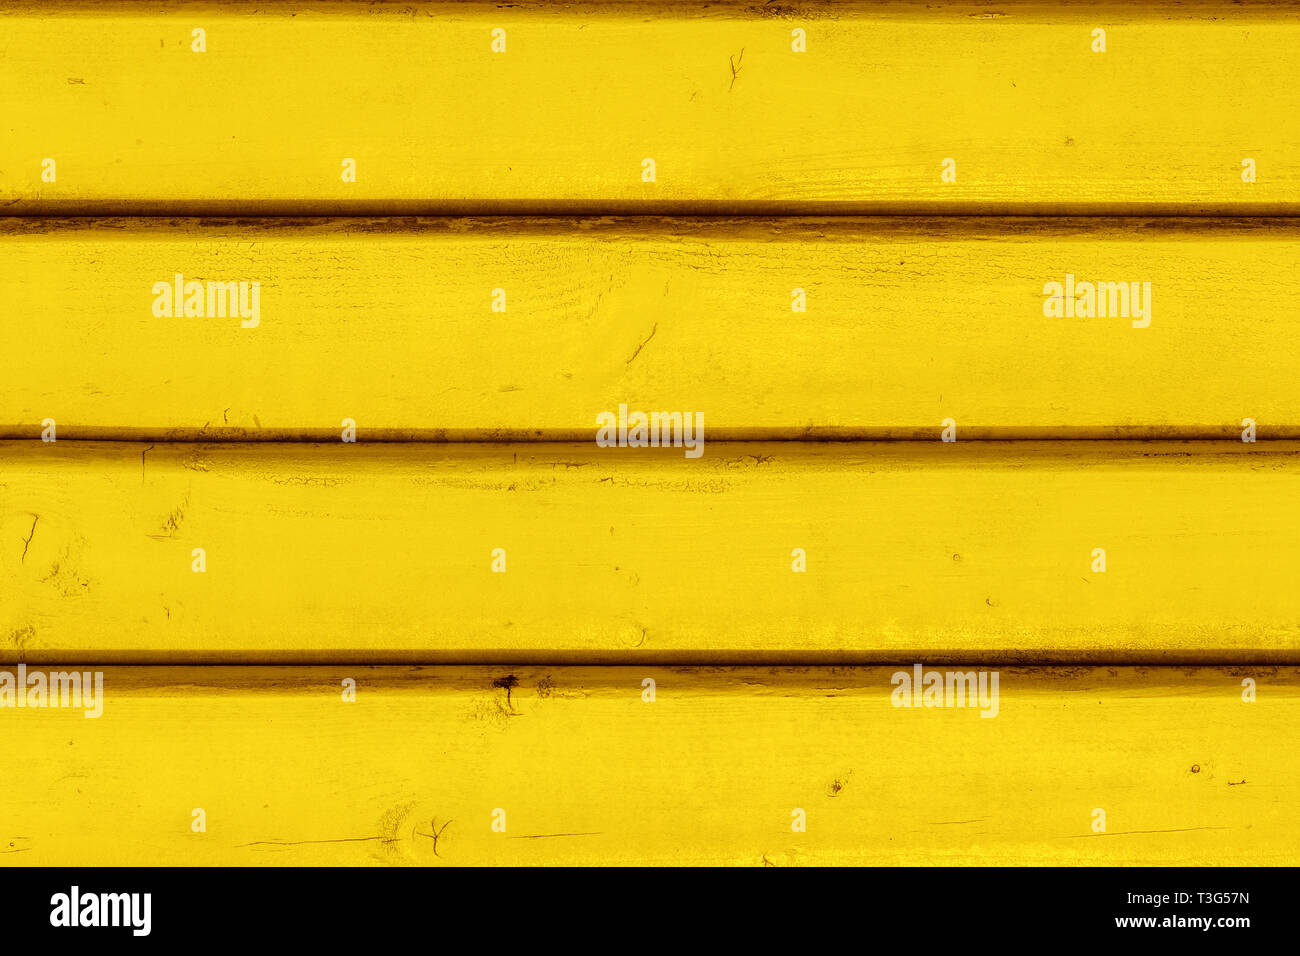 Gelb vintage Holzbrettern, Verkleidungen, Muster, Vorderansicht als Kopie oder grafik design Hintergrund überlappen Stockfoto